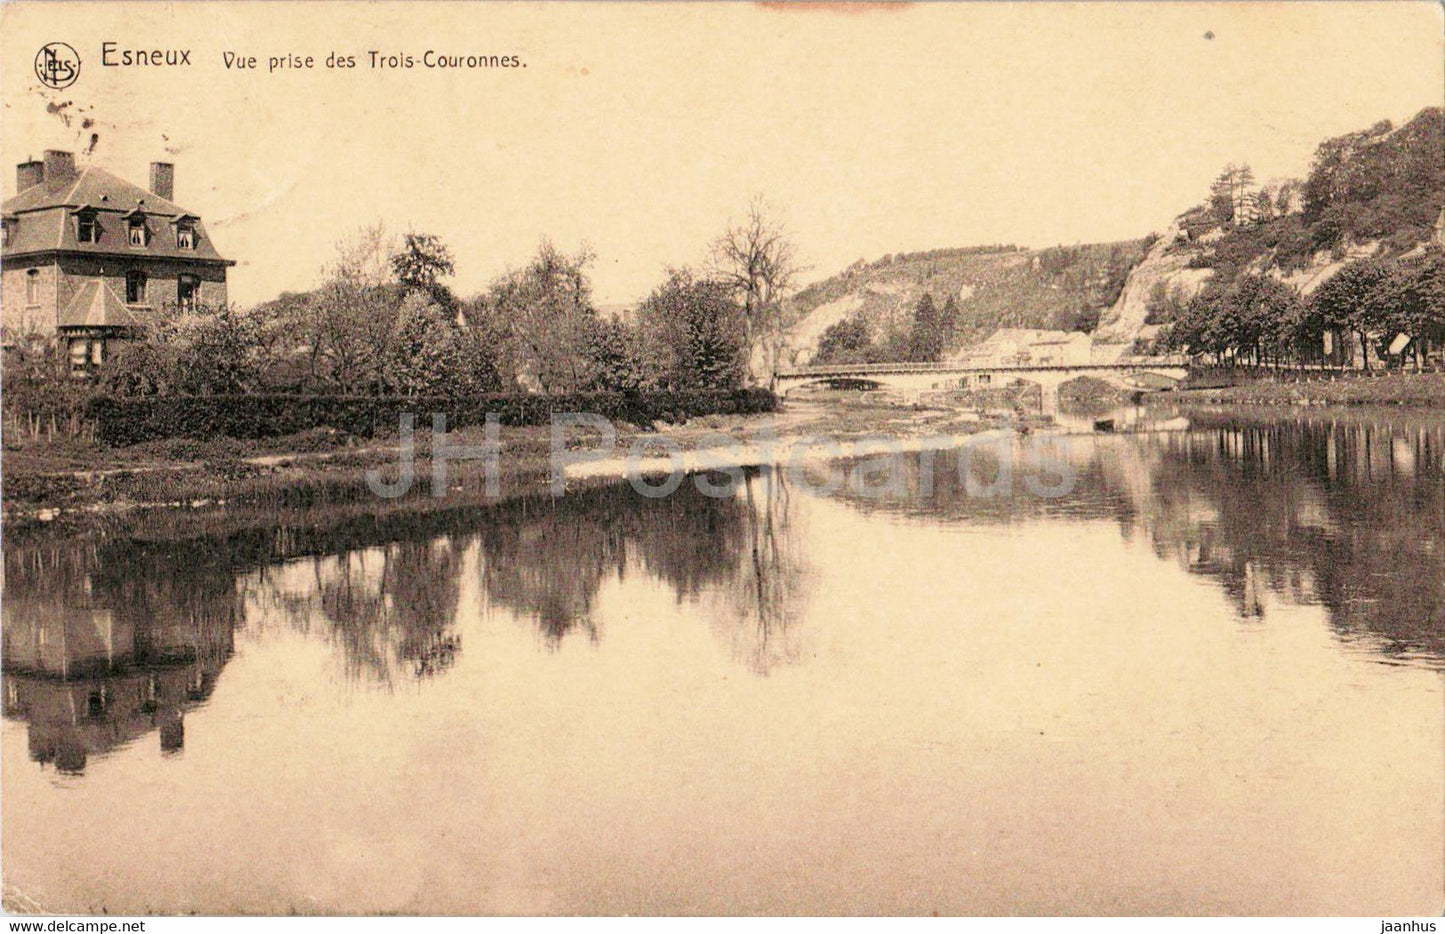 Esneux - Vue prise des Trois Couronnes - old postcard - Belgium - used - JH Postcards